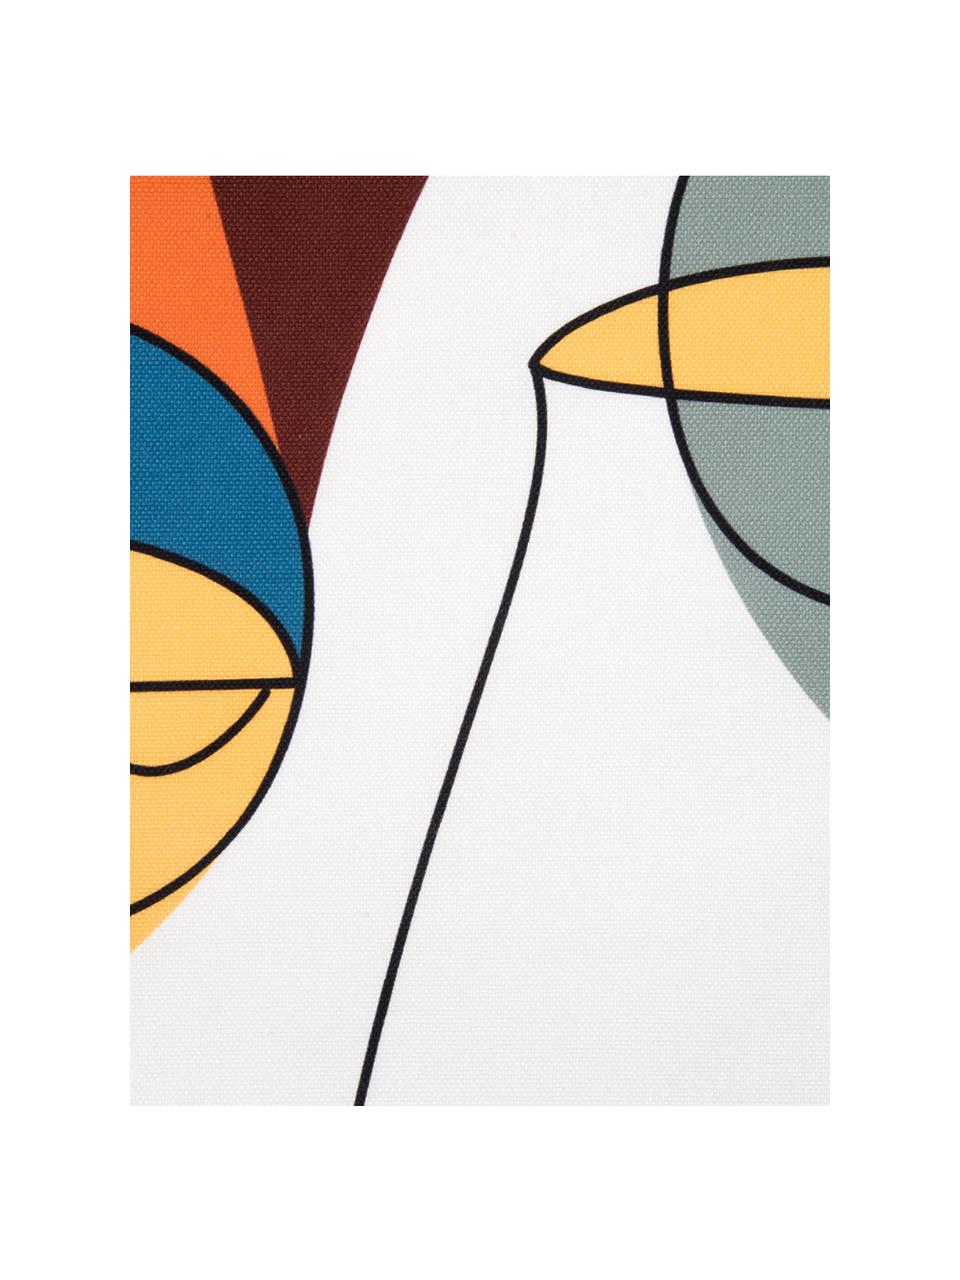 Kussenhoes Adrian met abstracte print in kleur, Weeftechniek: panama, Wit, multicolour, 40 x 40 cm